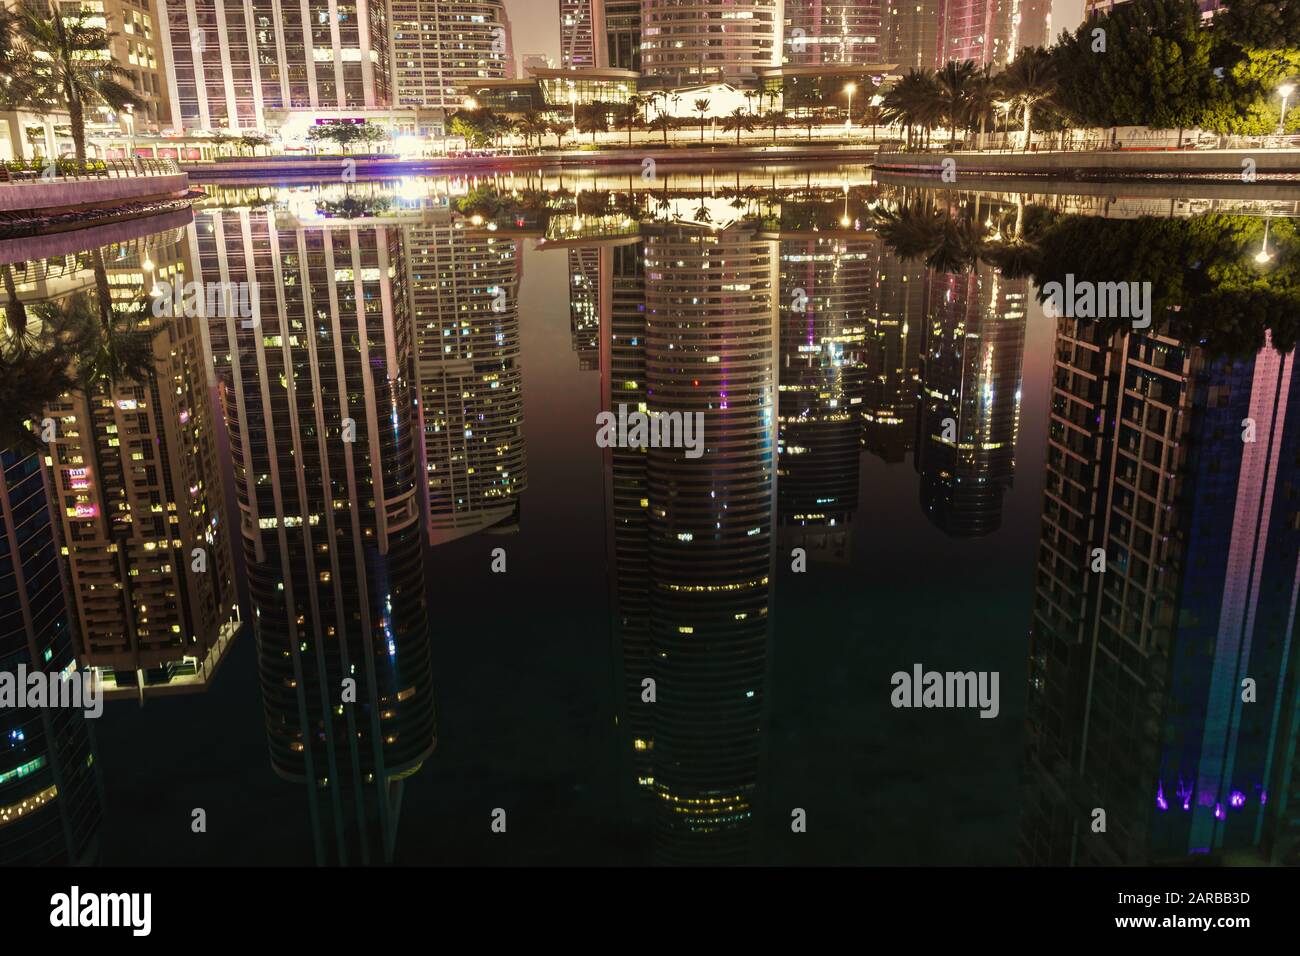 25 octobre 2019; Jumeirah Lake Towers JLT Dubai, Emirats Arabes Unis; Les gratte-ciel modernes et futuristes la nuit avec la réflexion sur l'eau Banque D'Images